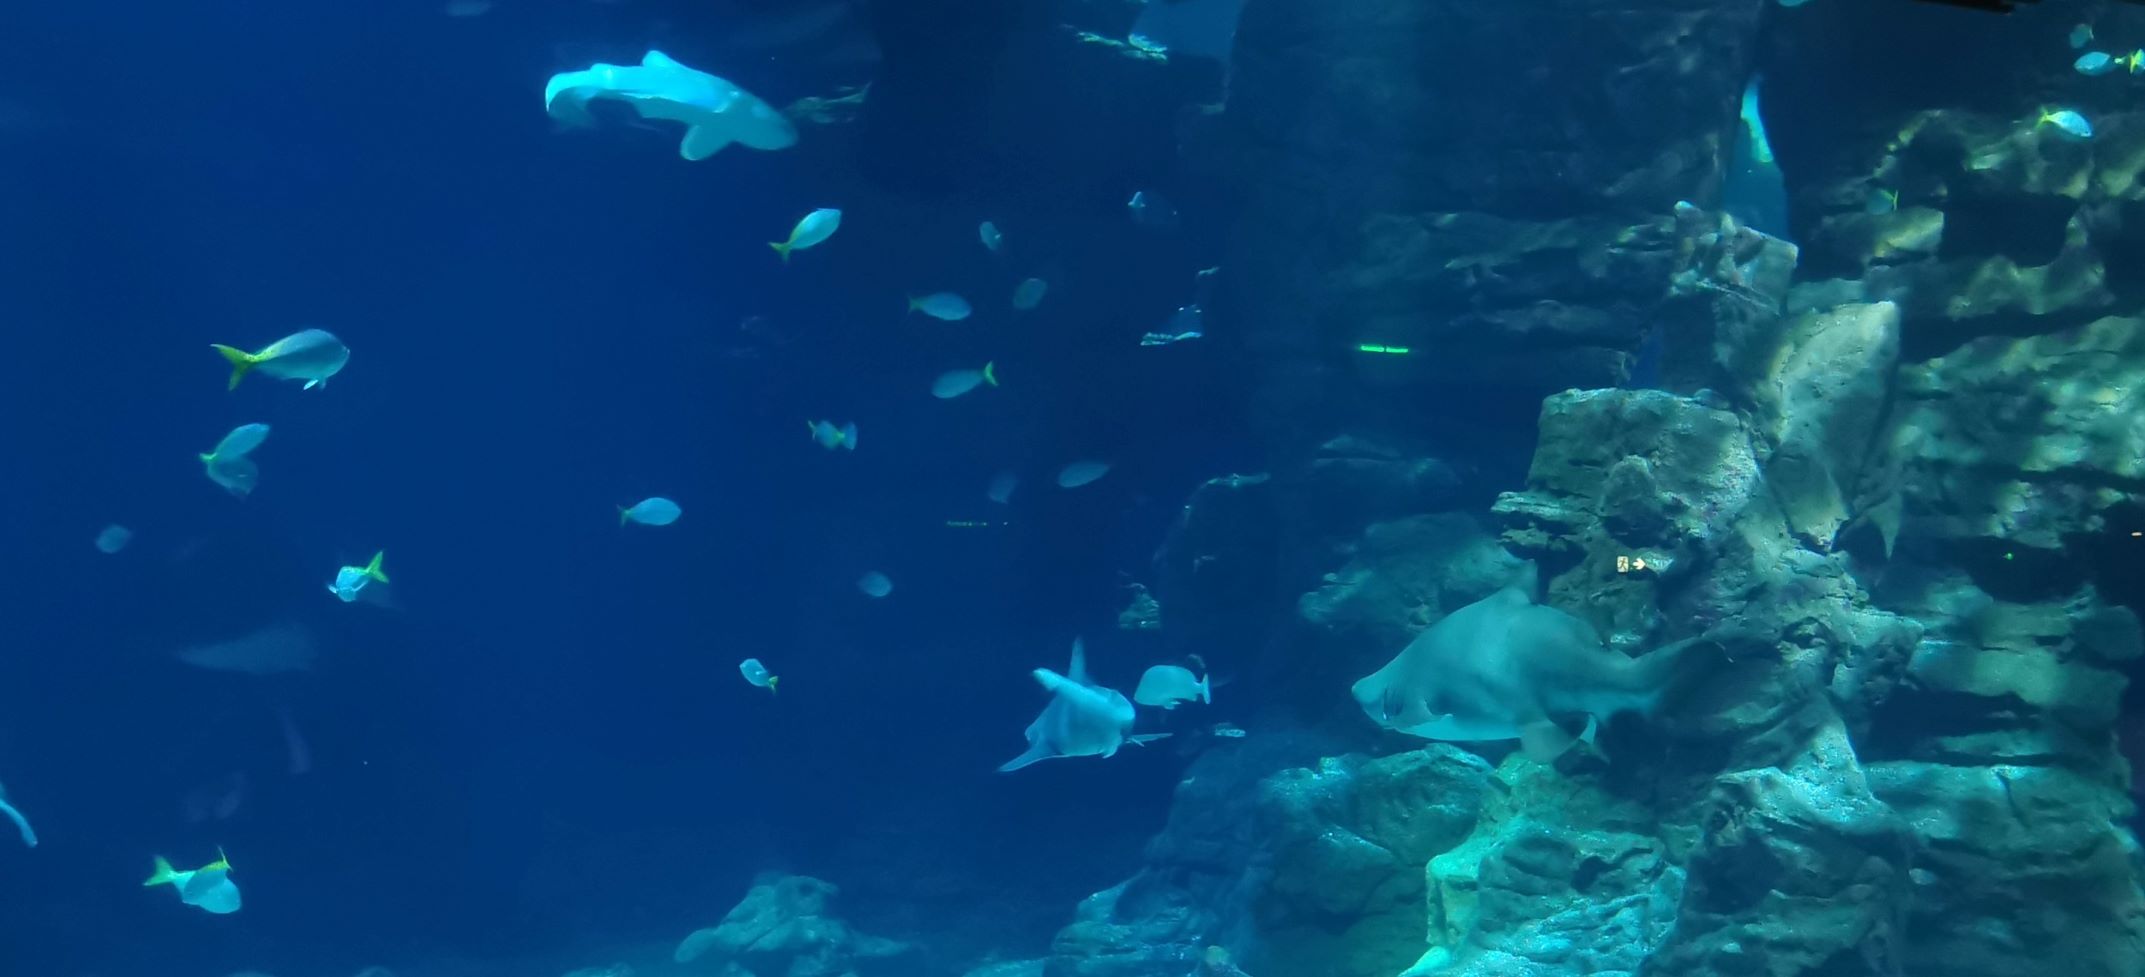 Ez elvileg a nagy akvárium egy részlete, csak nem lehetett rendesen fényképezni, mert állandóan mászkáltak előtte.